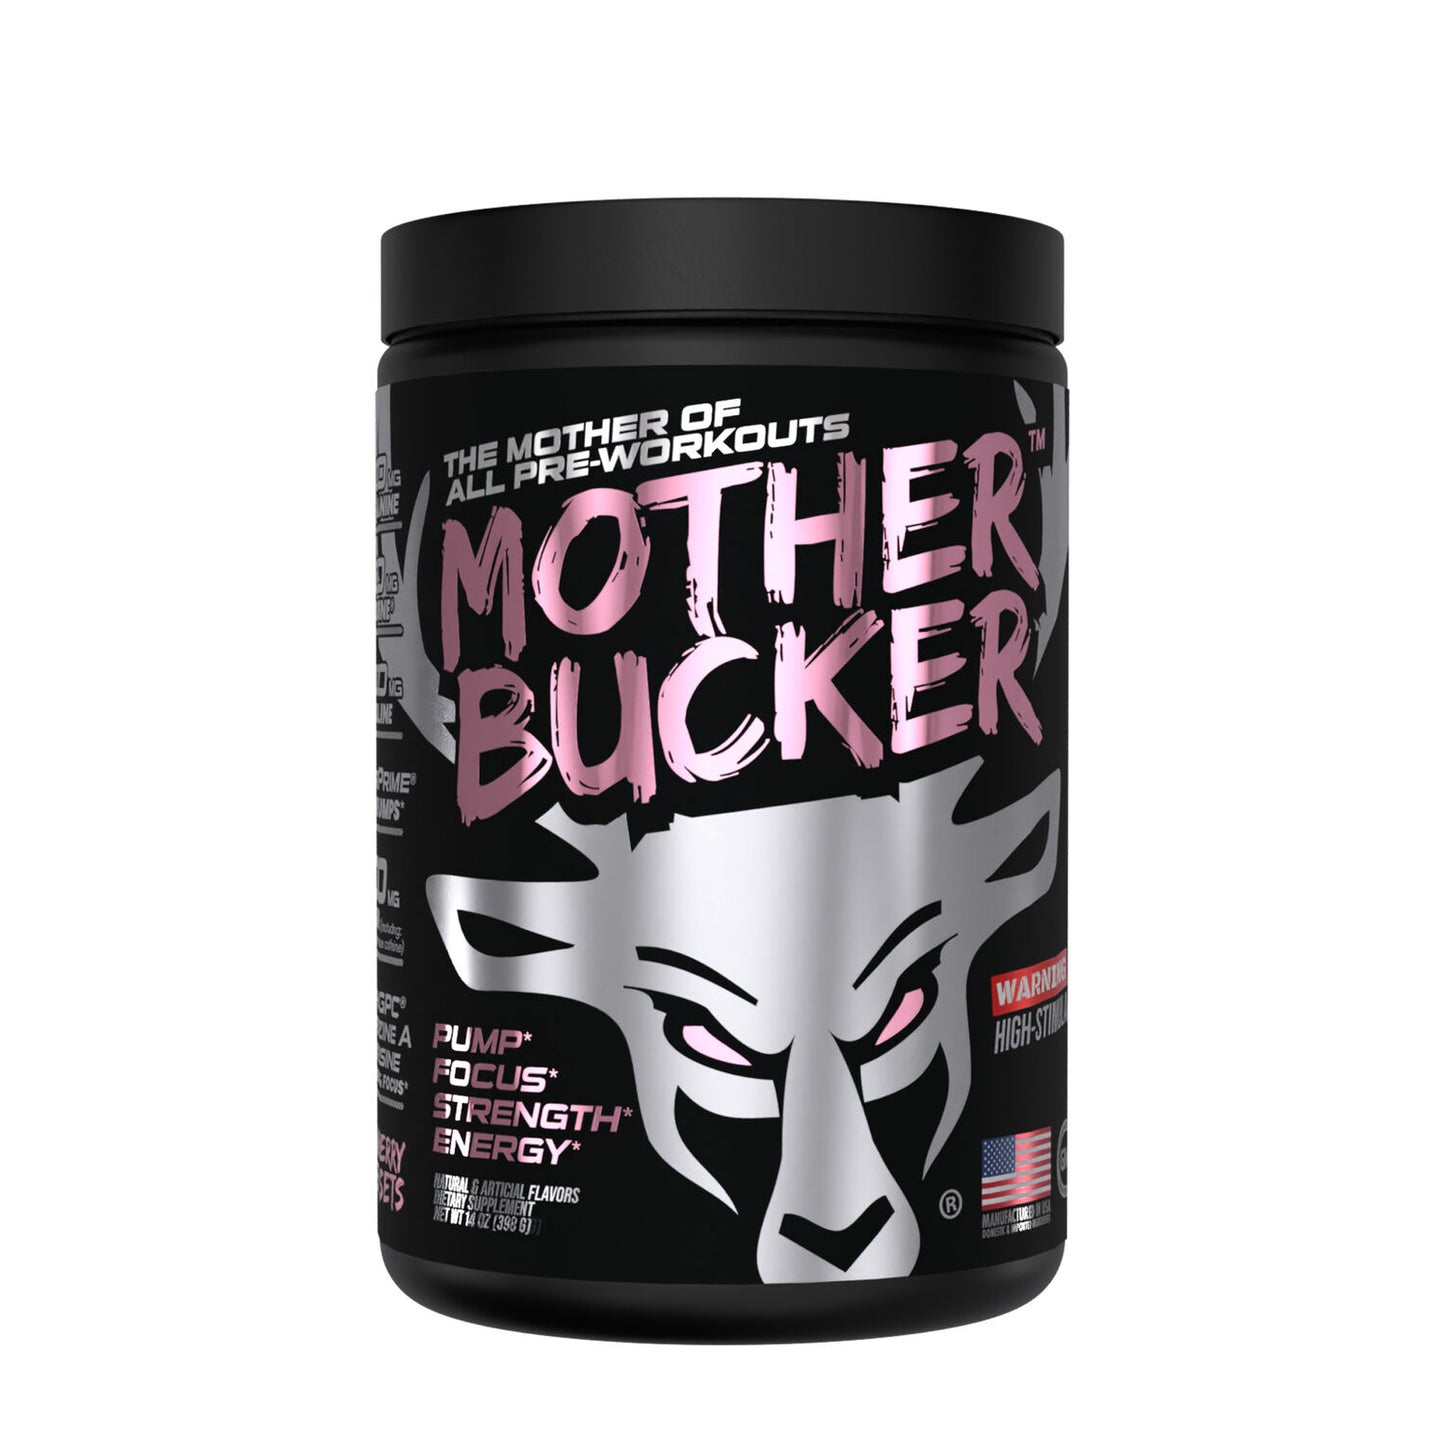 Mother bucker